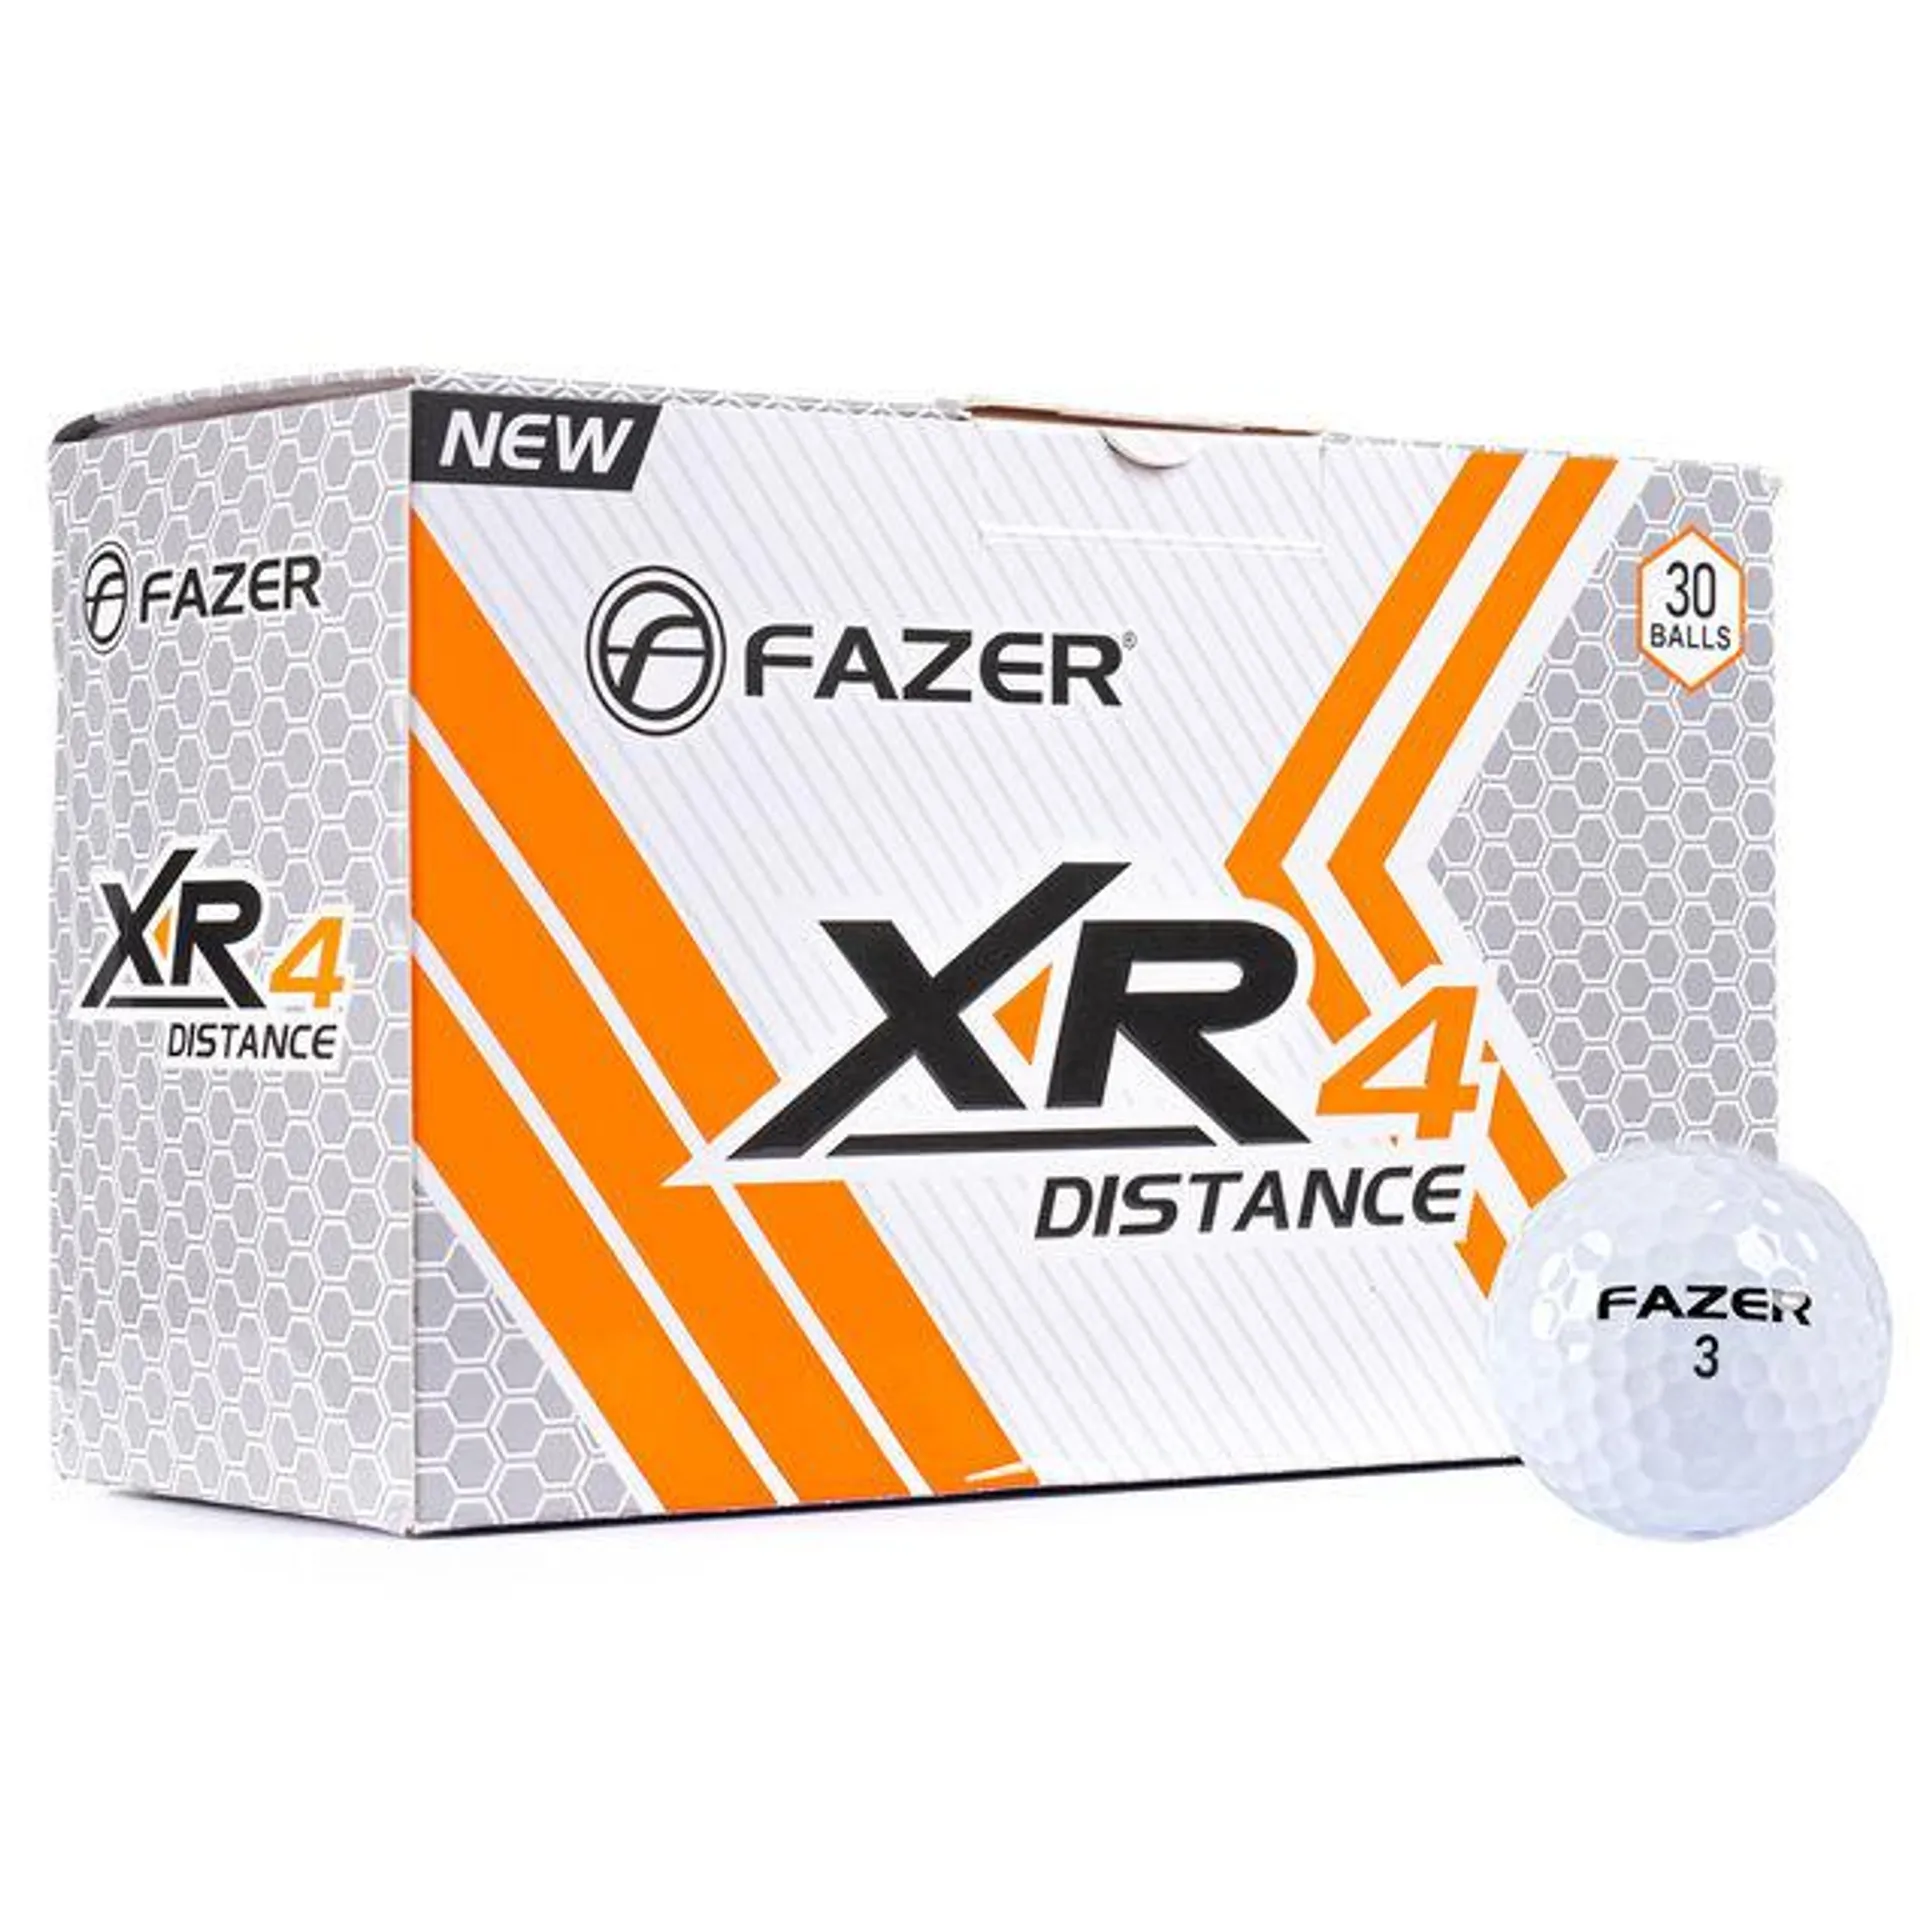 Fazer XR4 Distance 30 Golf Ball Pack